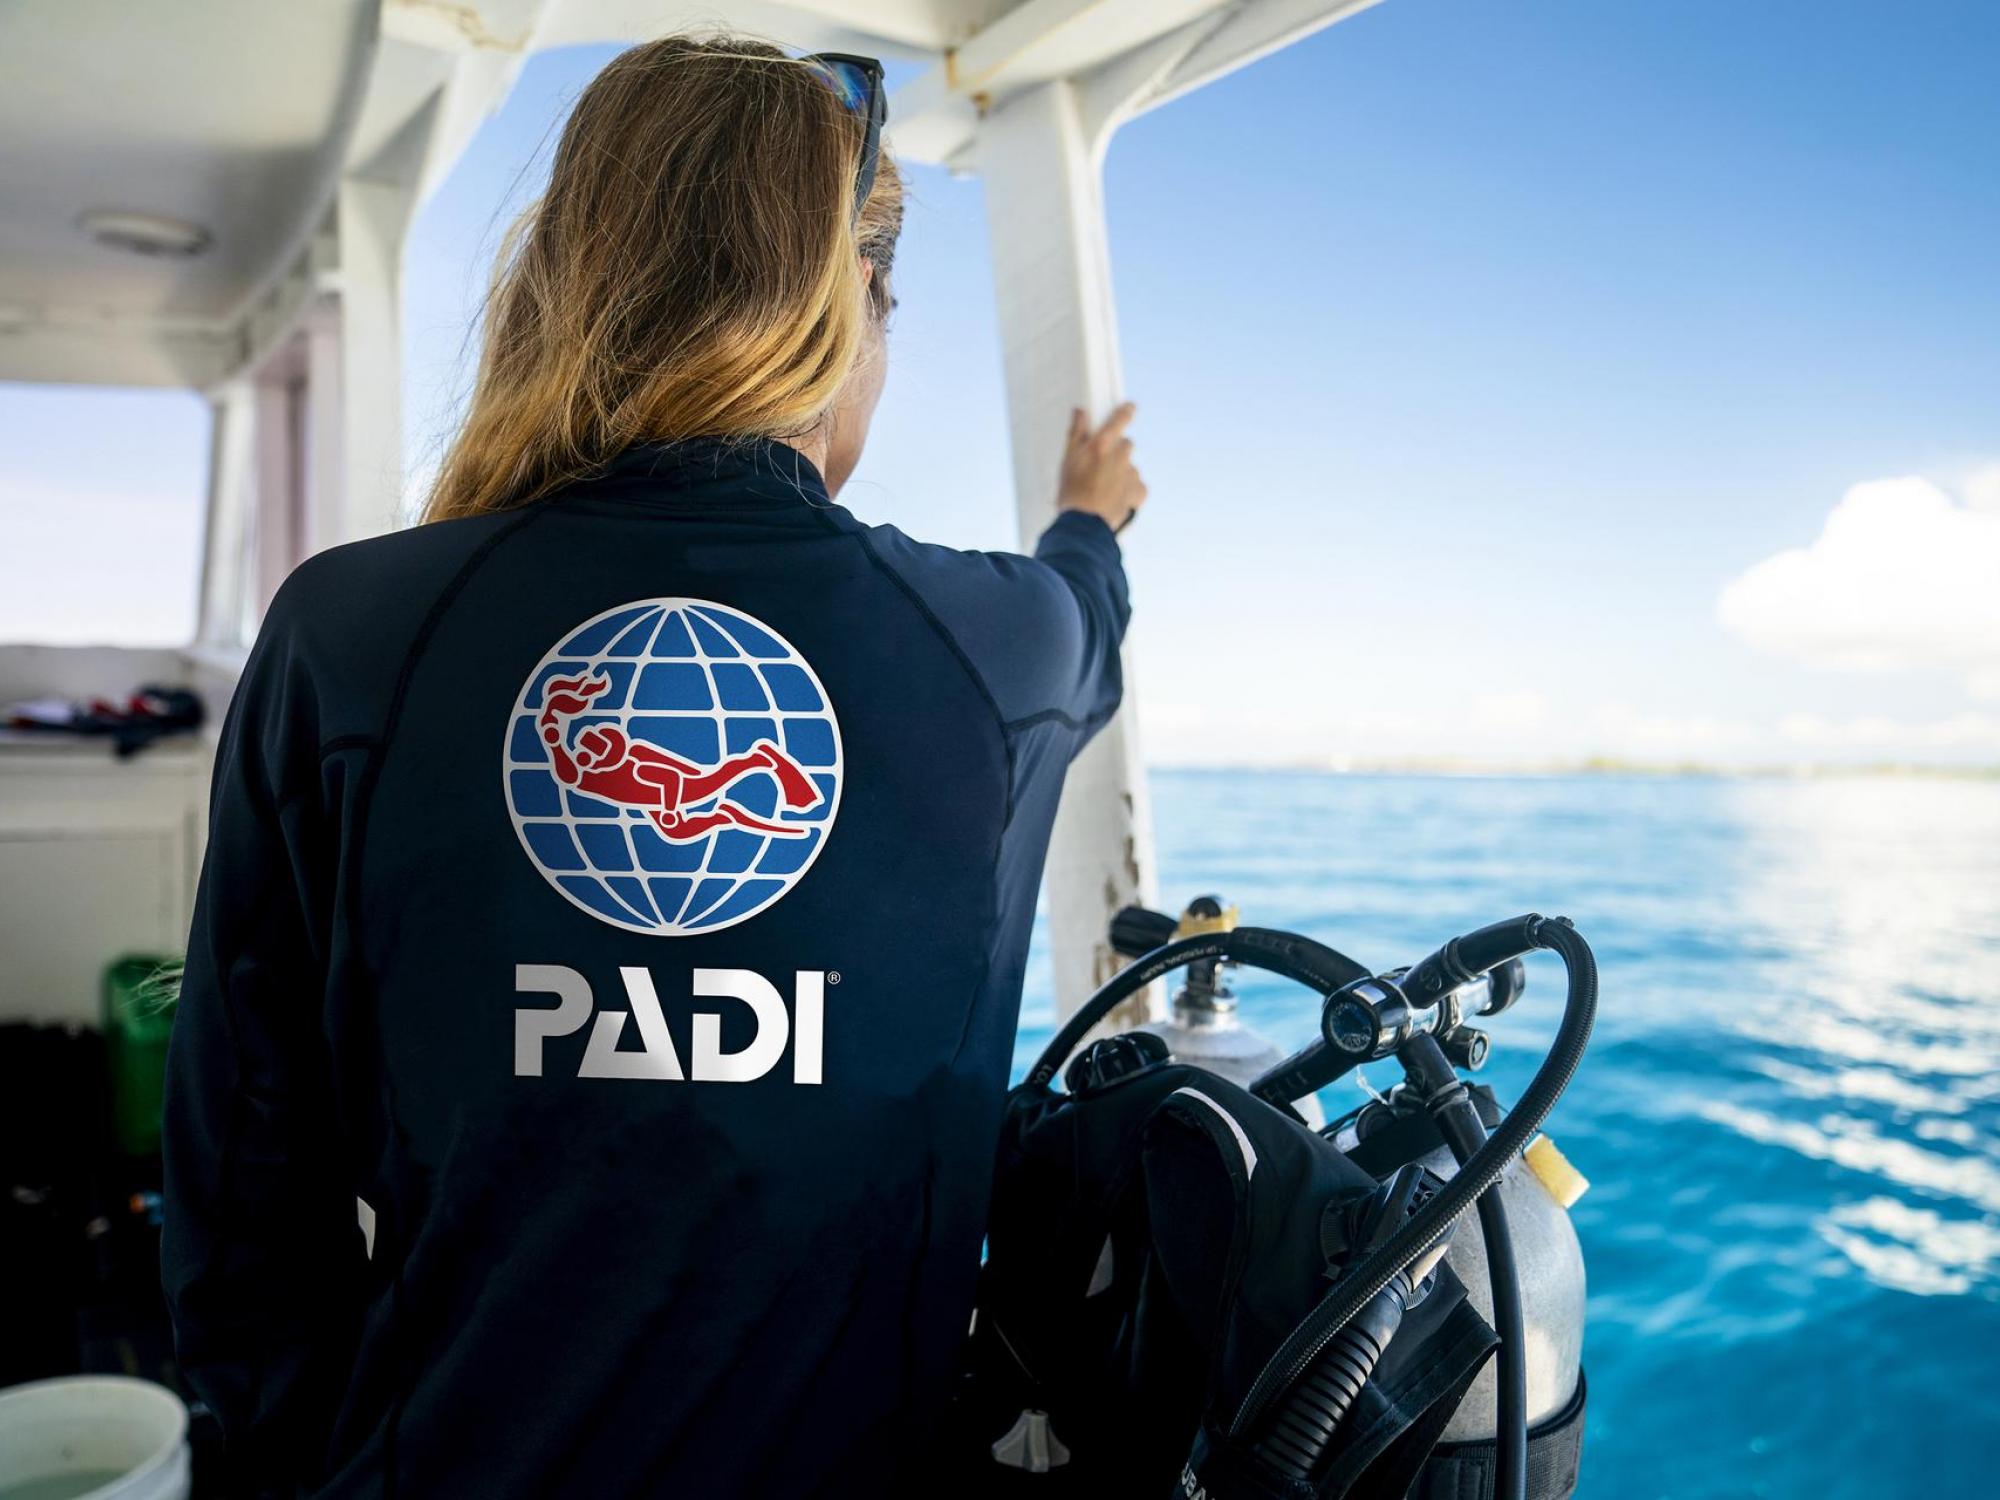 PADI member on a boat